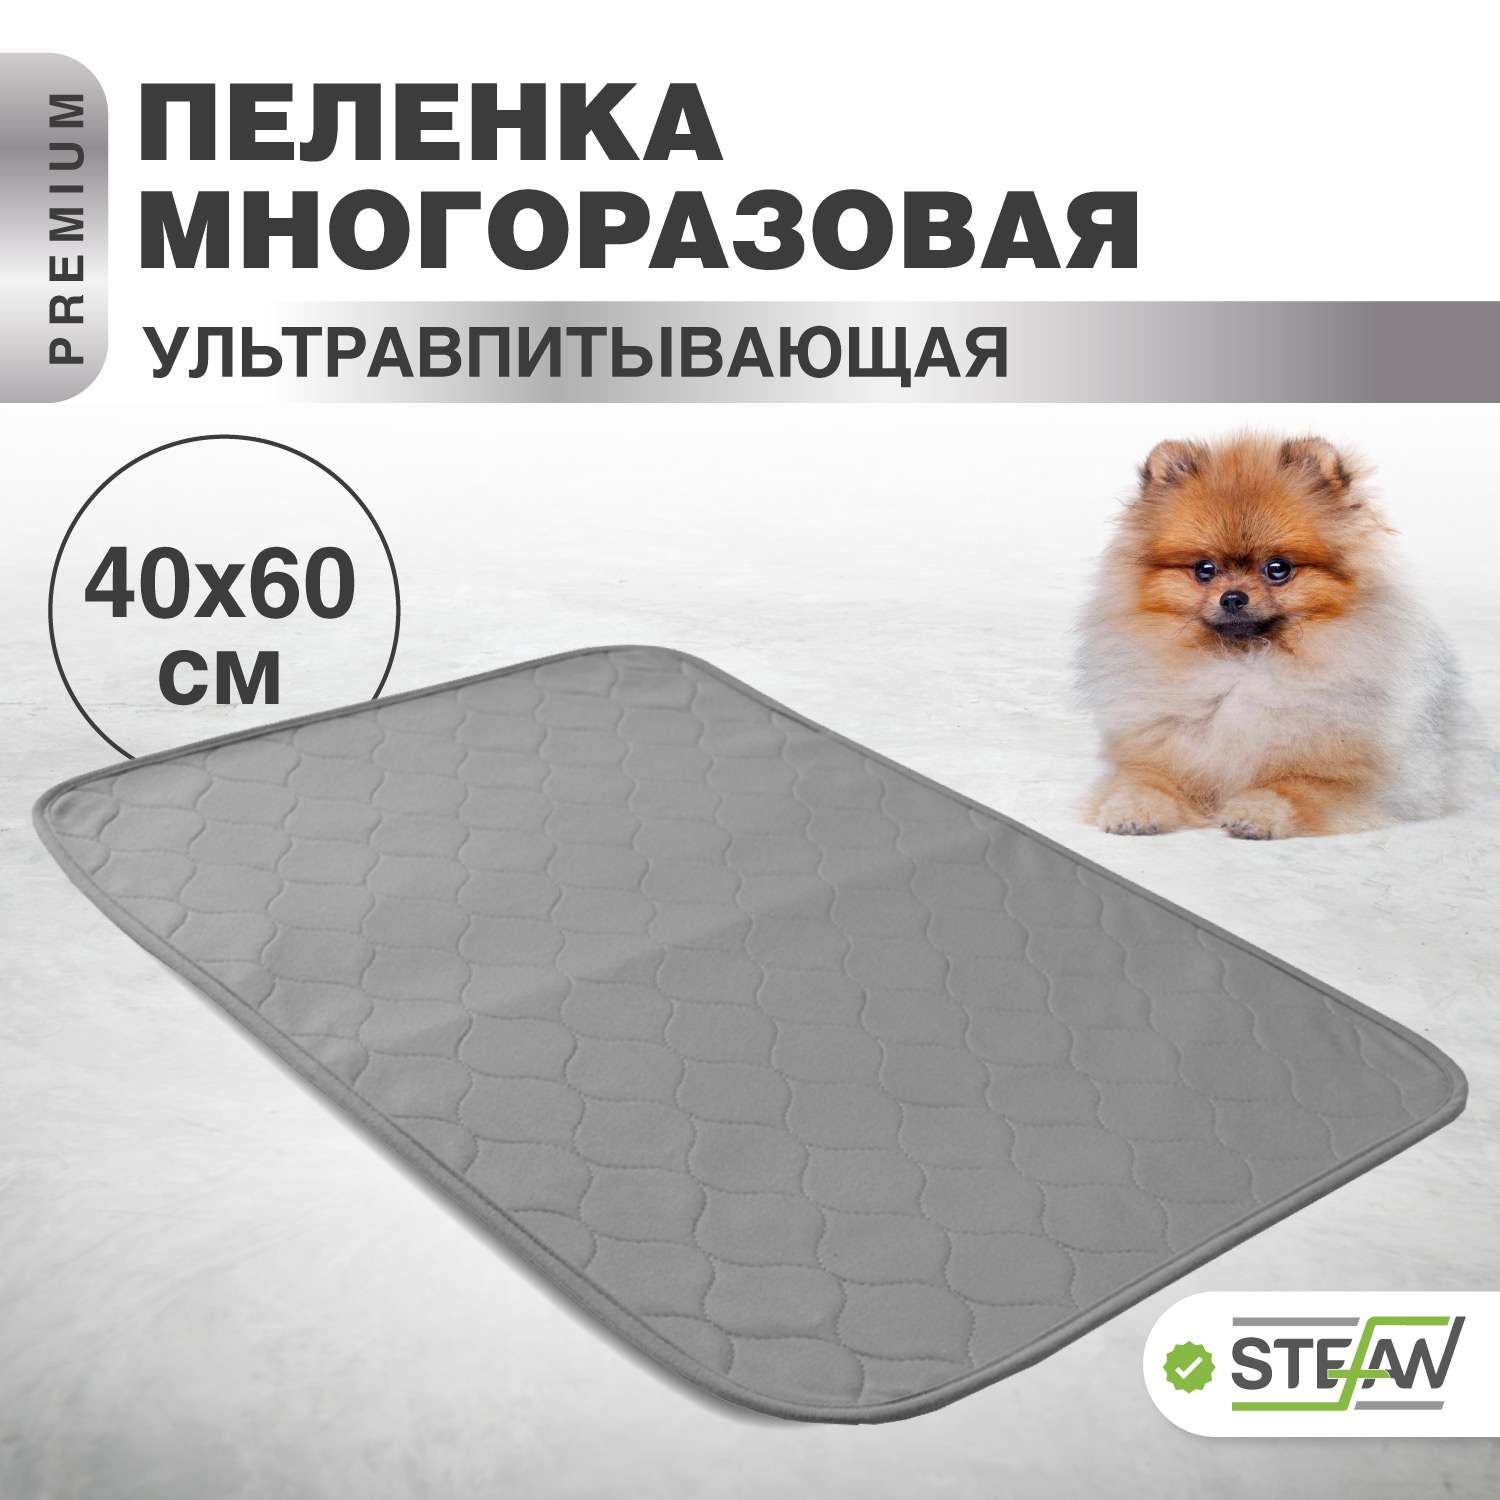 Пеленка для животных Stefan впитывающая многоразовая серая однотонная 40х60 см - фото 1